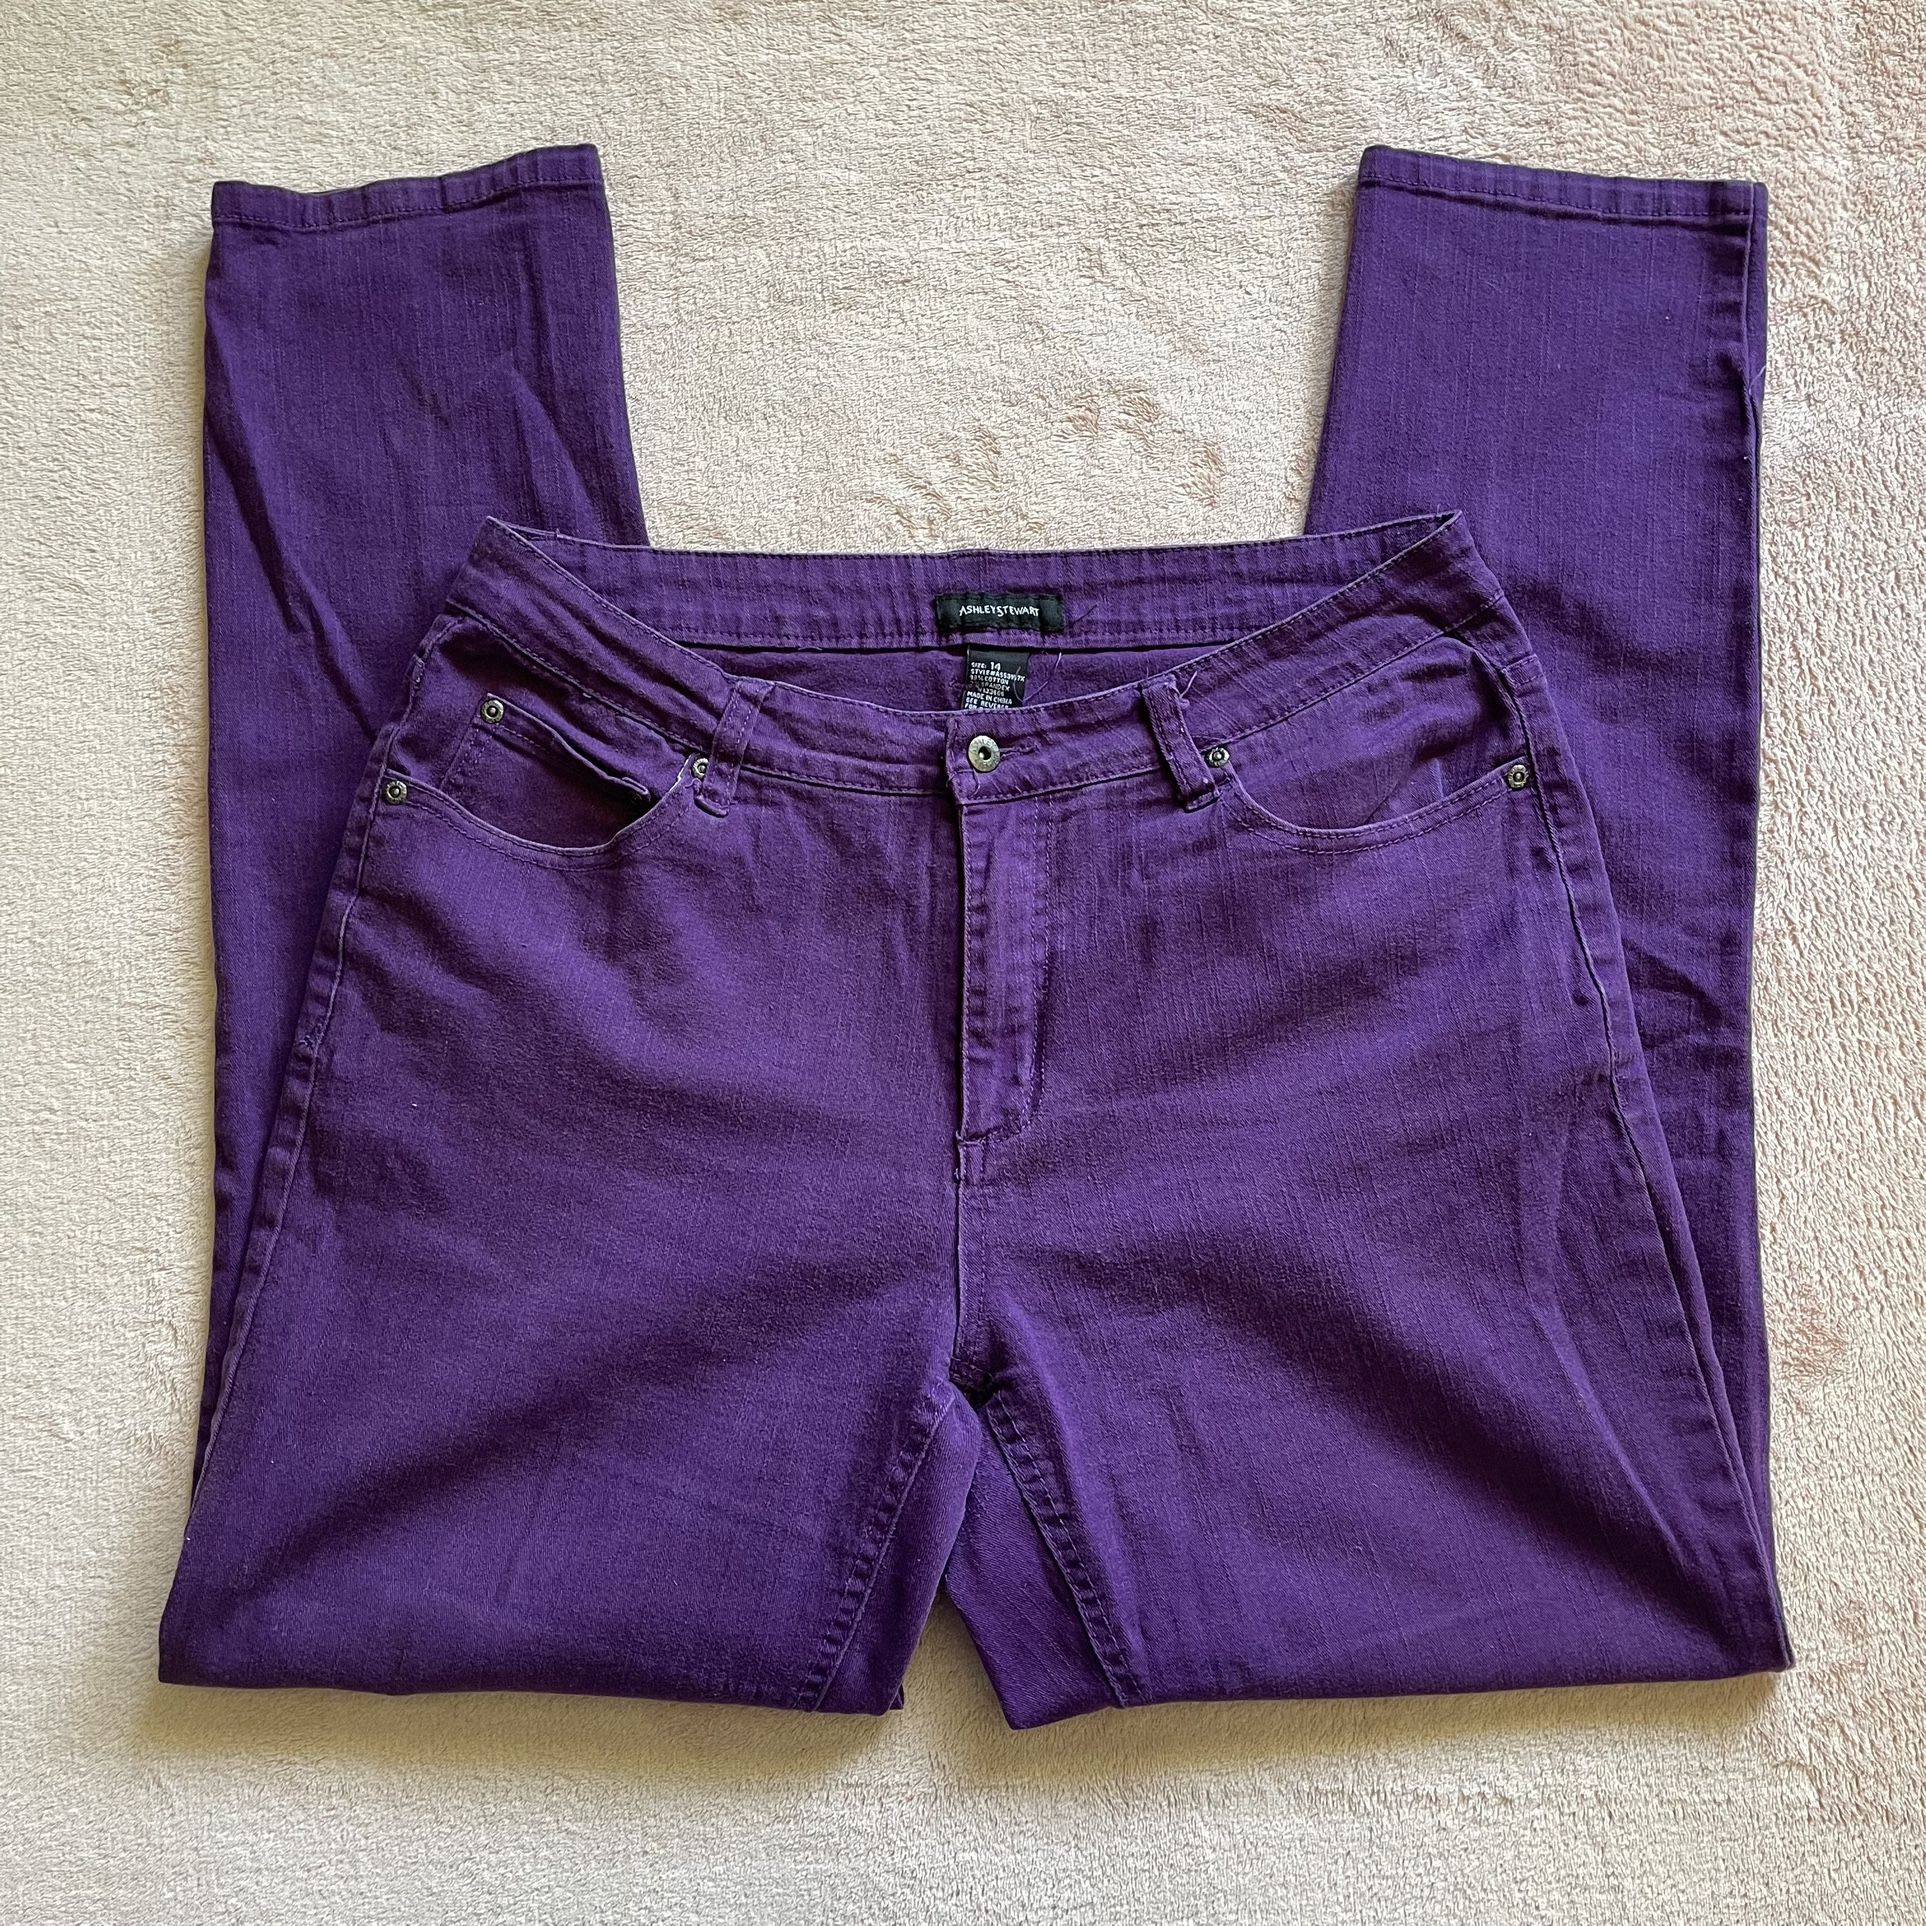 Ashley Stewart Women’s Purple straight Leg Jeans Size 14